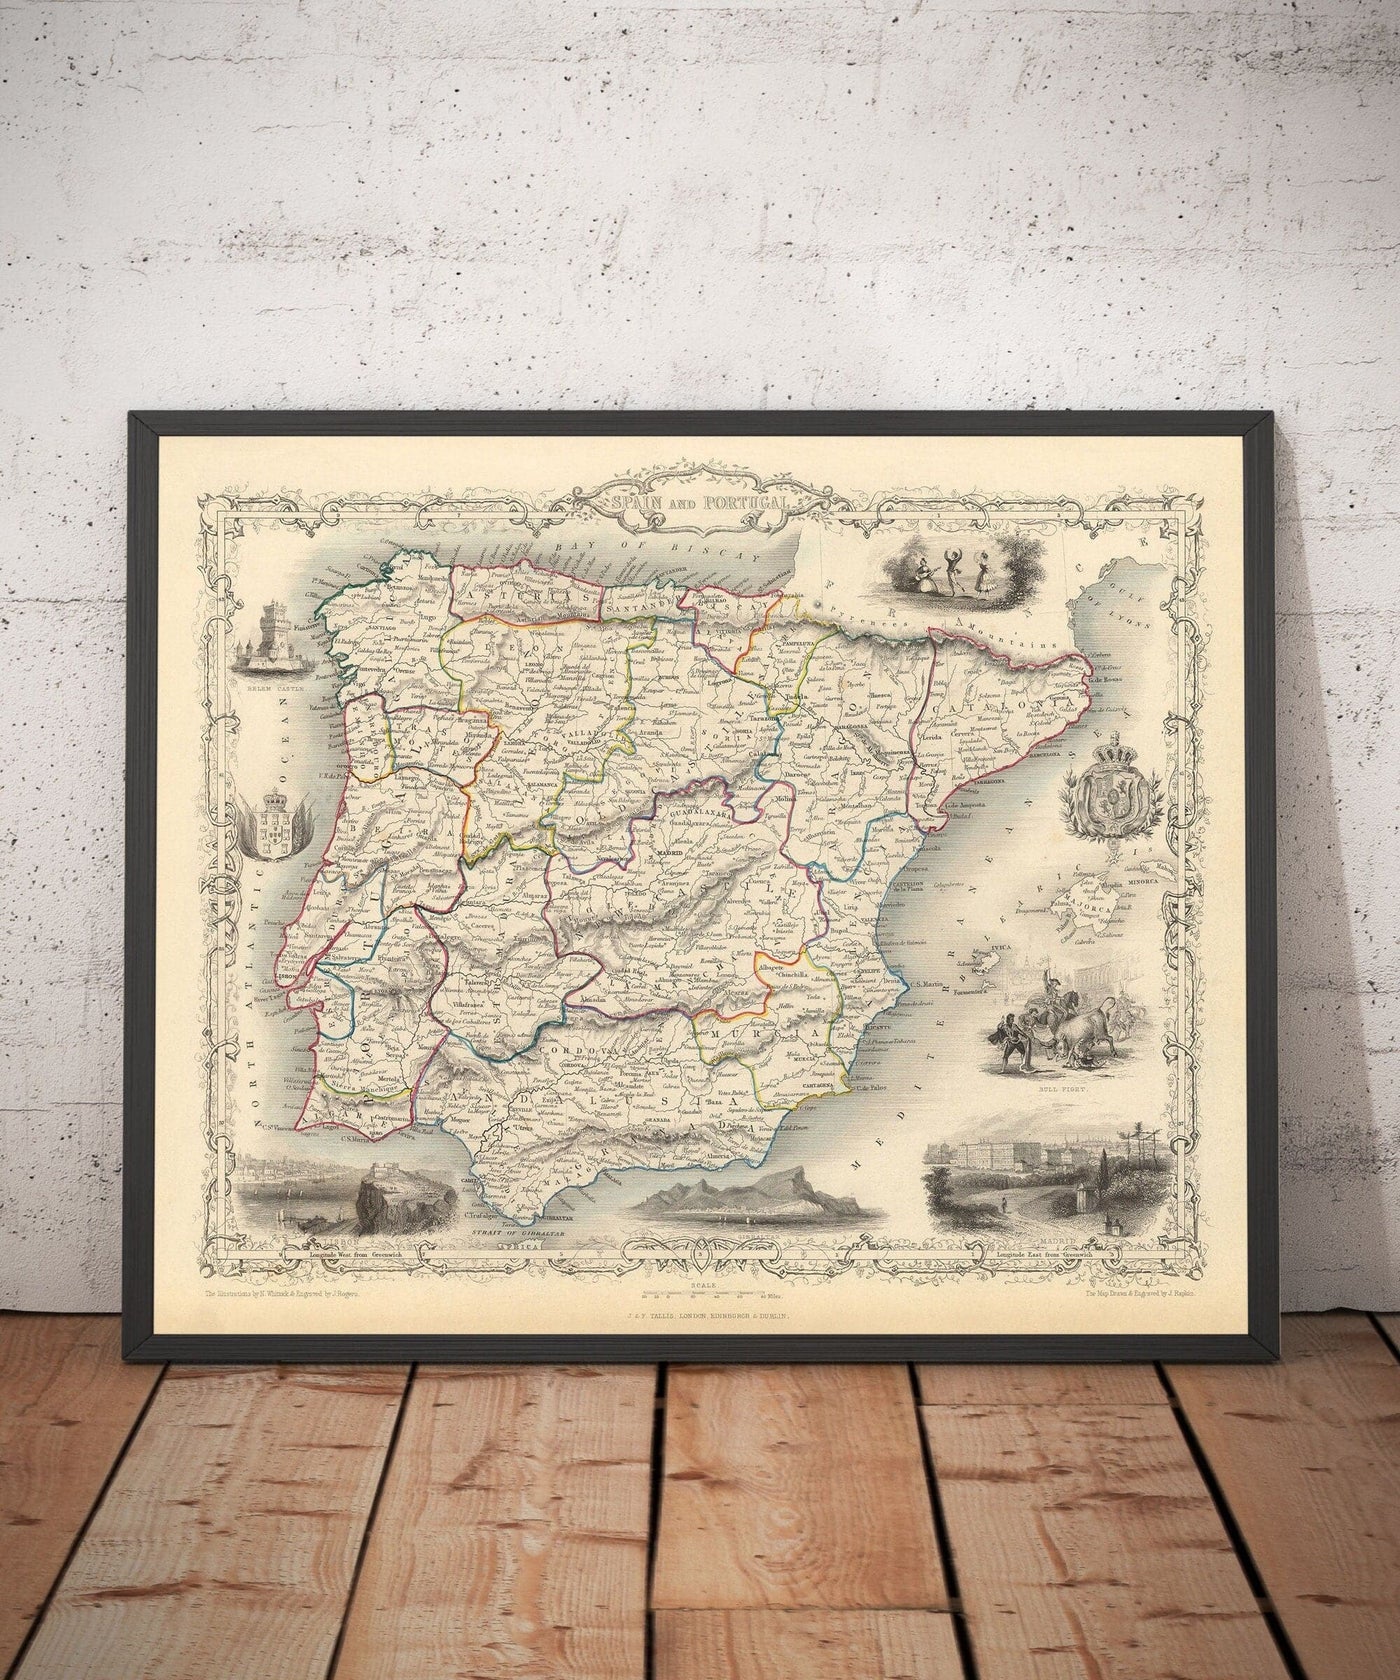 Mapa antiguo de España y Portugal, 1851 - Ilustraciones victorianas - Cataluña, Madrid, Lisboa, Gibraltar, Andalucía